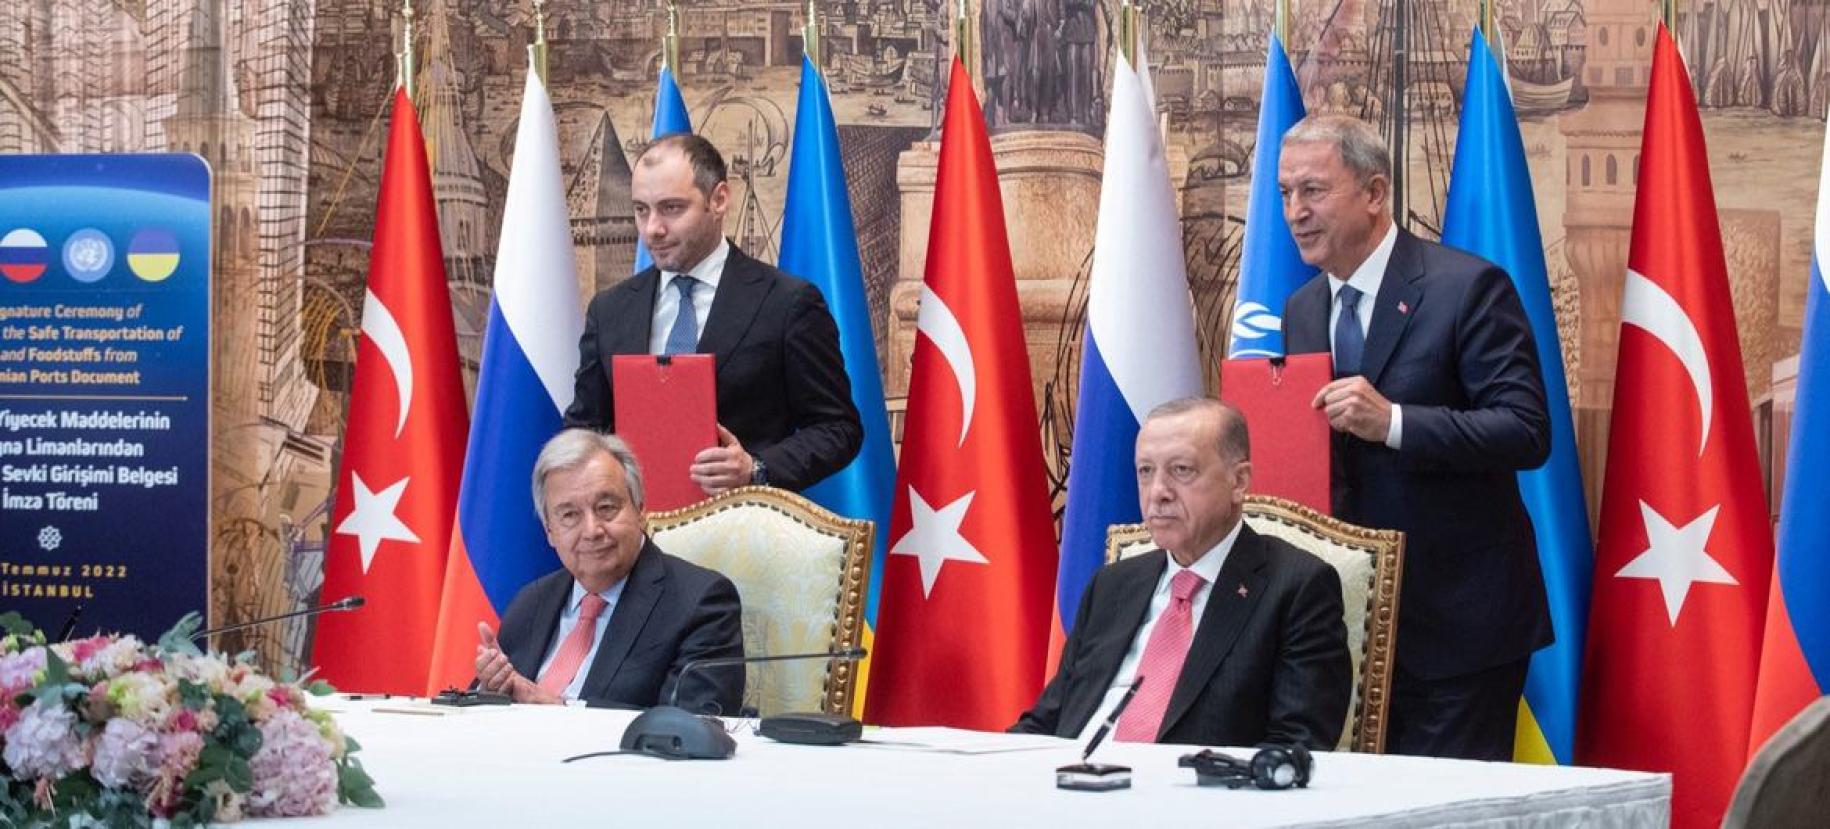 Dos hombres trajeados se sientan en una mesa con micrófonos delante de ellos, con personas de pie detrás de ellos. La mesa está adornada con banderas rusas, turcas y de la ONU.